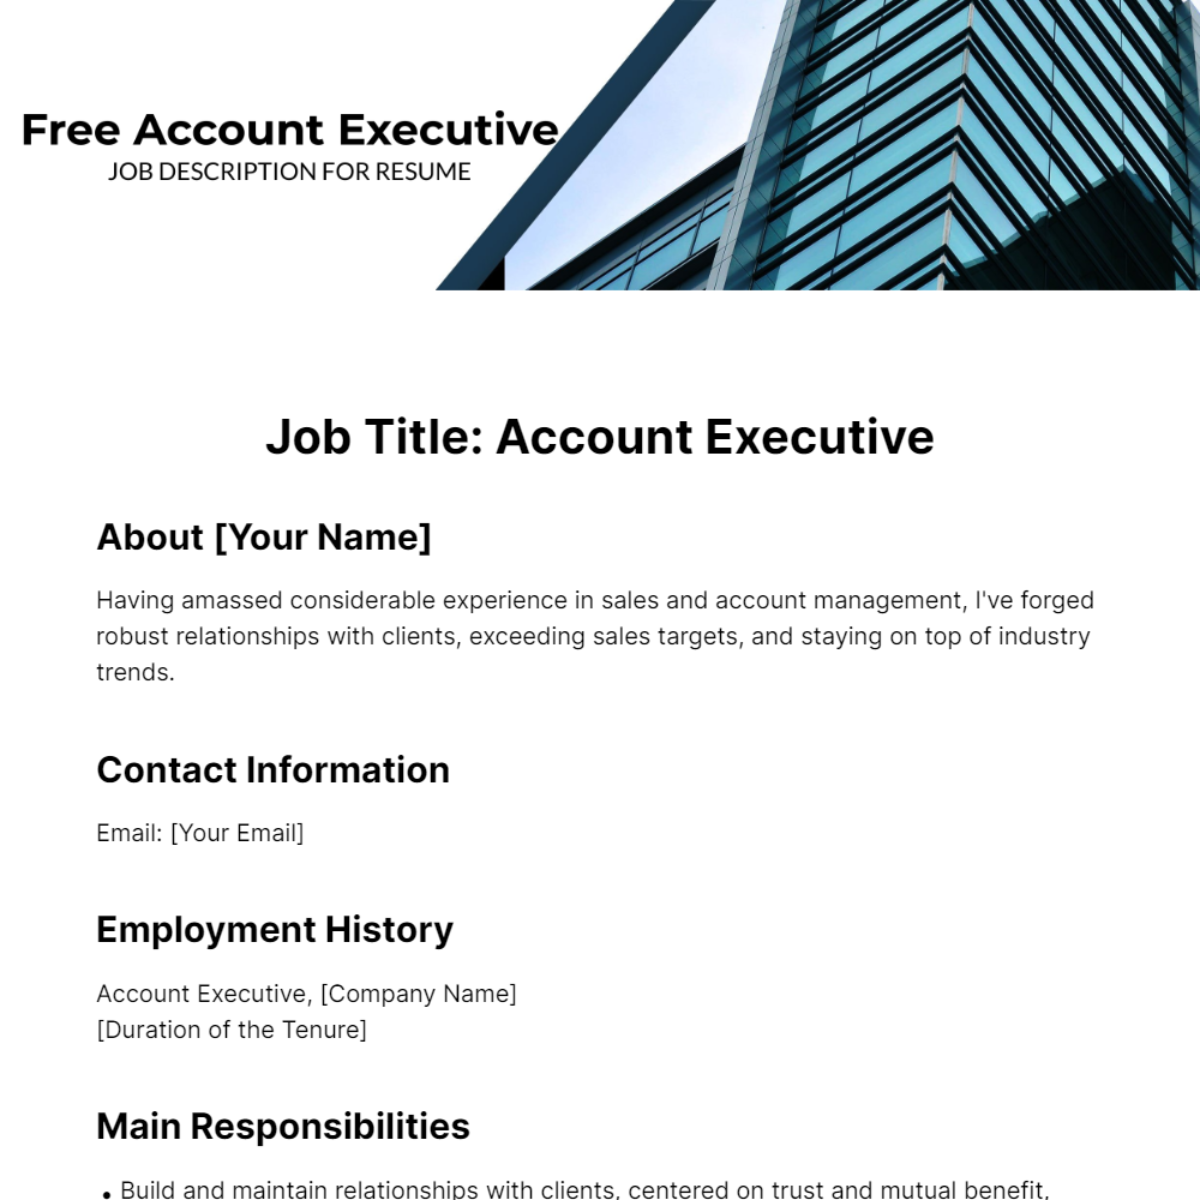 Account Executive Job Description for Resume Template